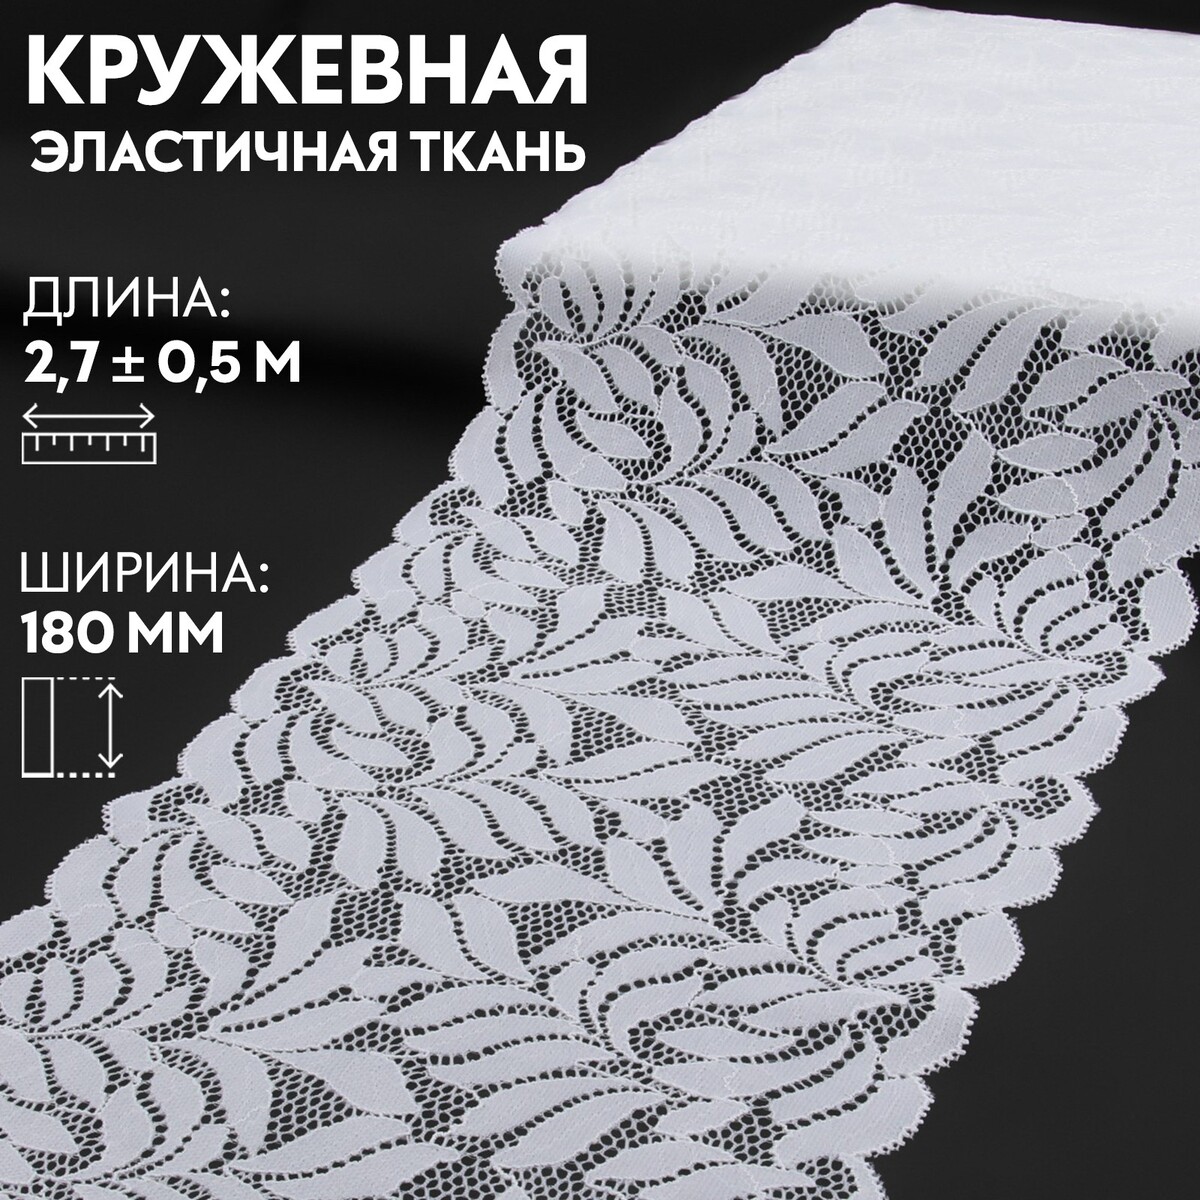 Кружевная эластичная ткань, 180 мм × 2,7 ± 0,5 м, цвет белый кружевная эластичная ткань 175 мм × 2 7 ± 0 5 м шоколадный